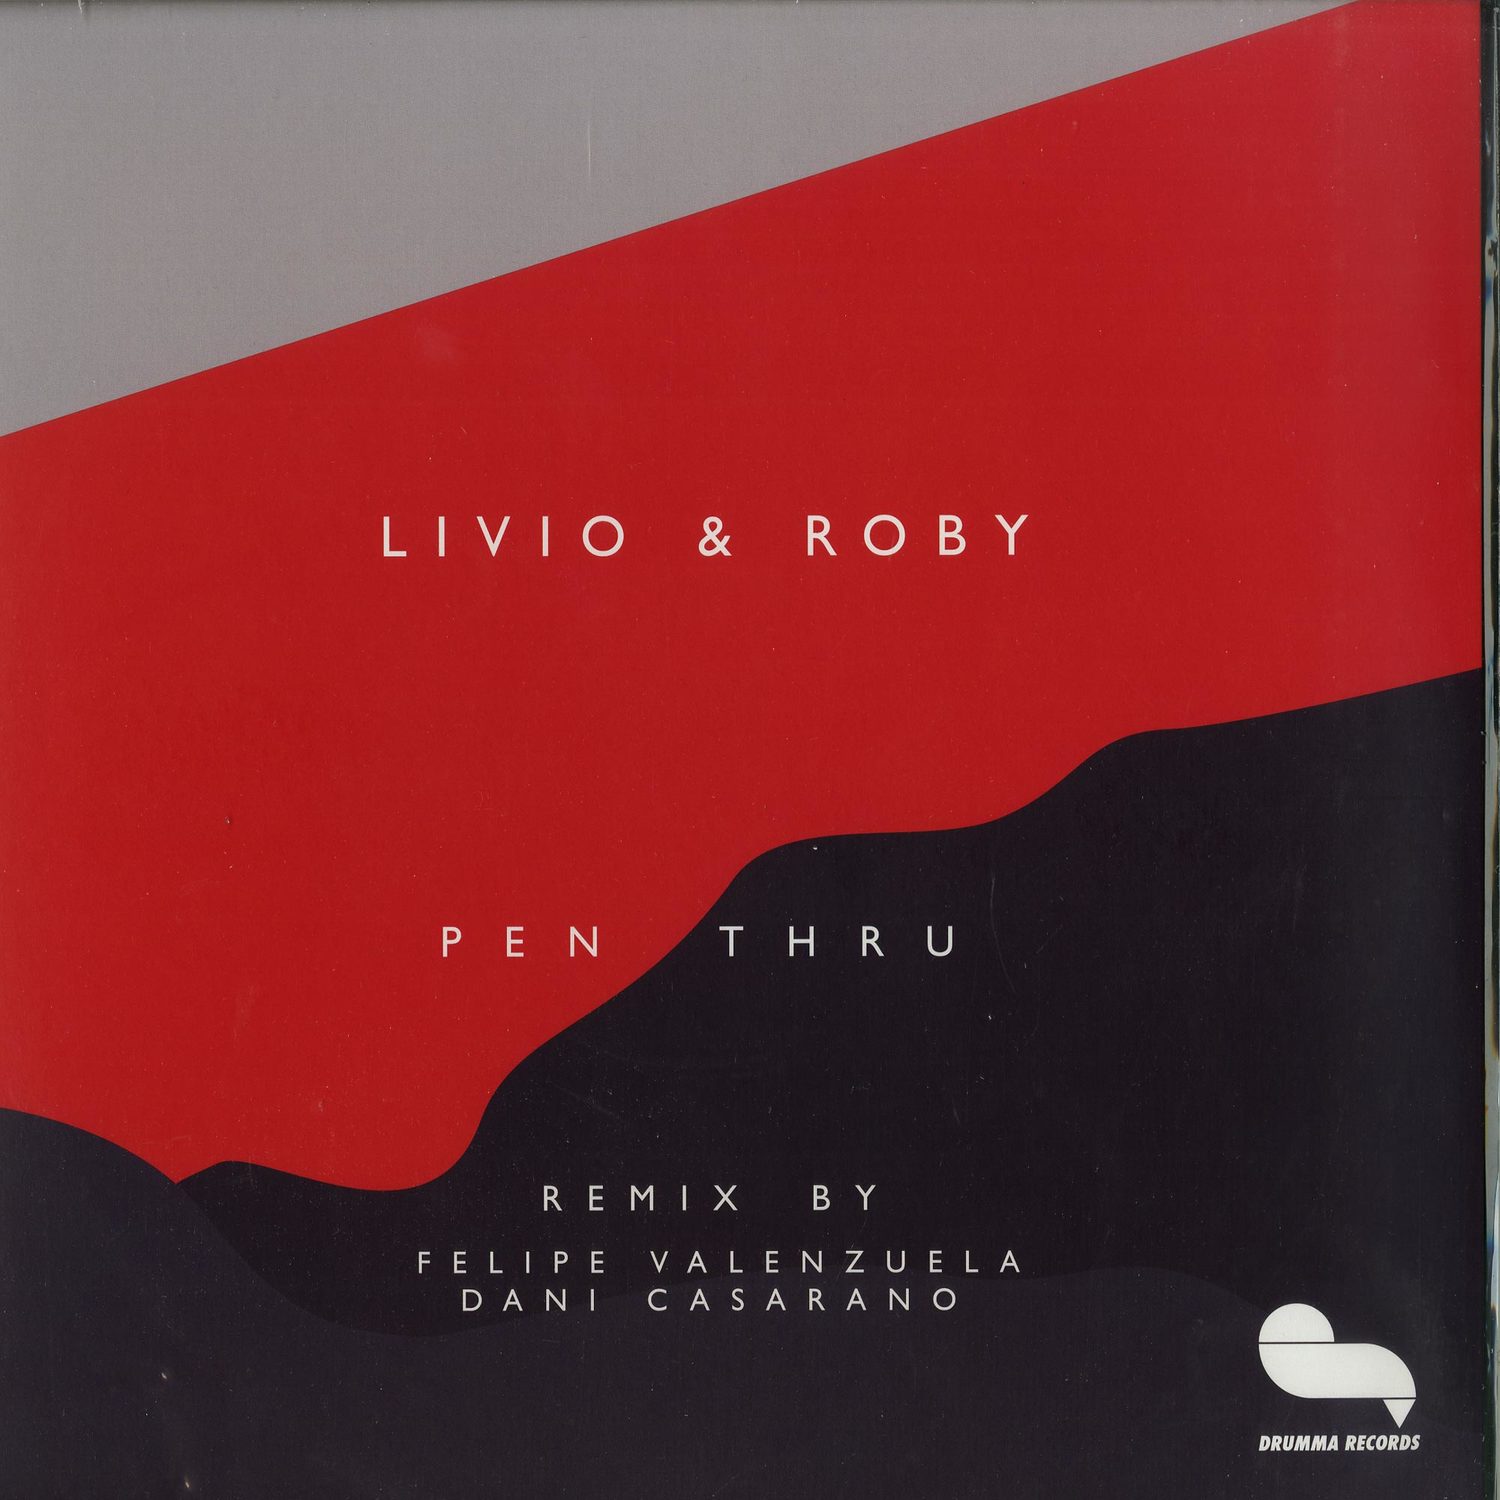 Livio & Roby - PEN THRU EP